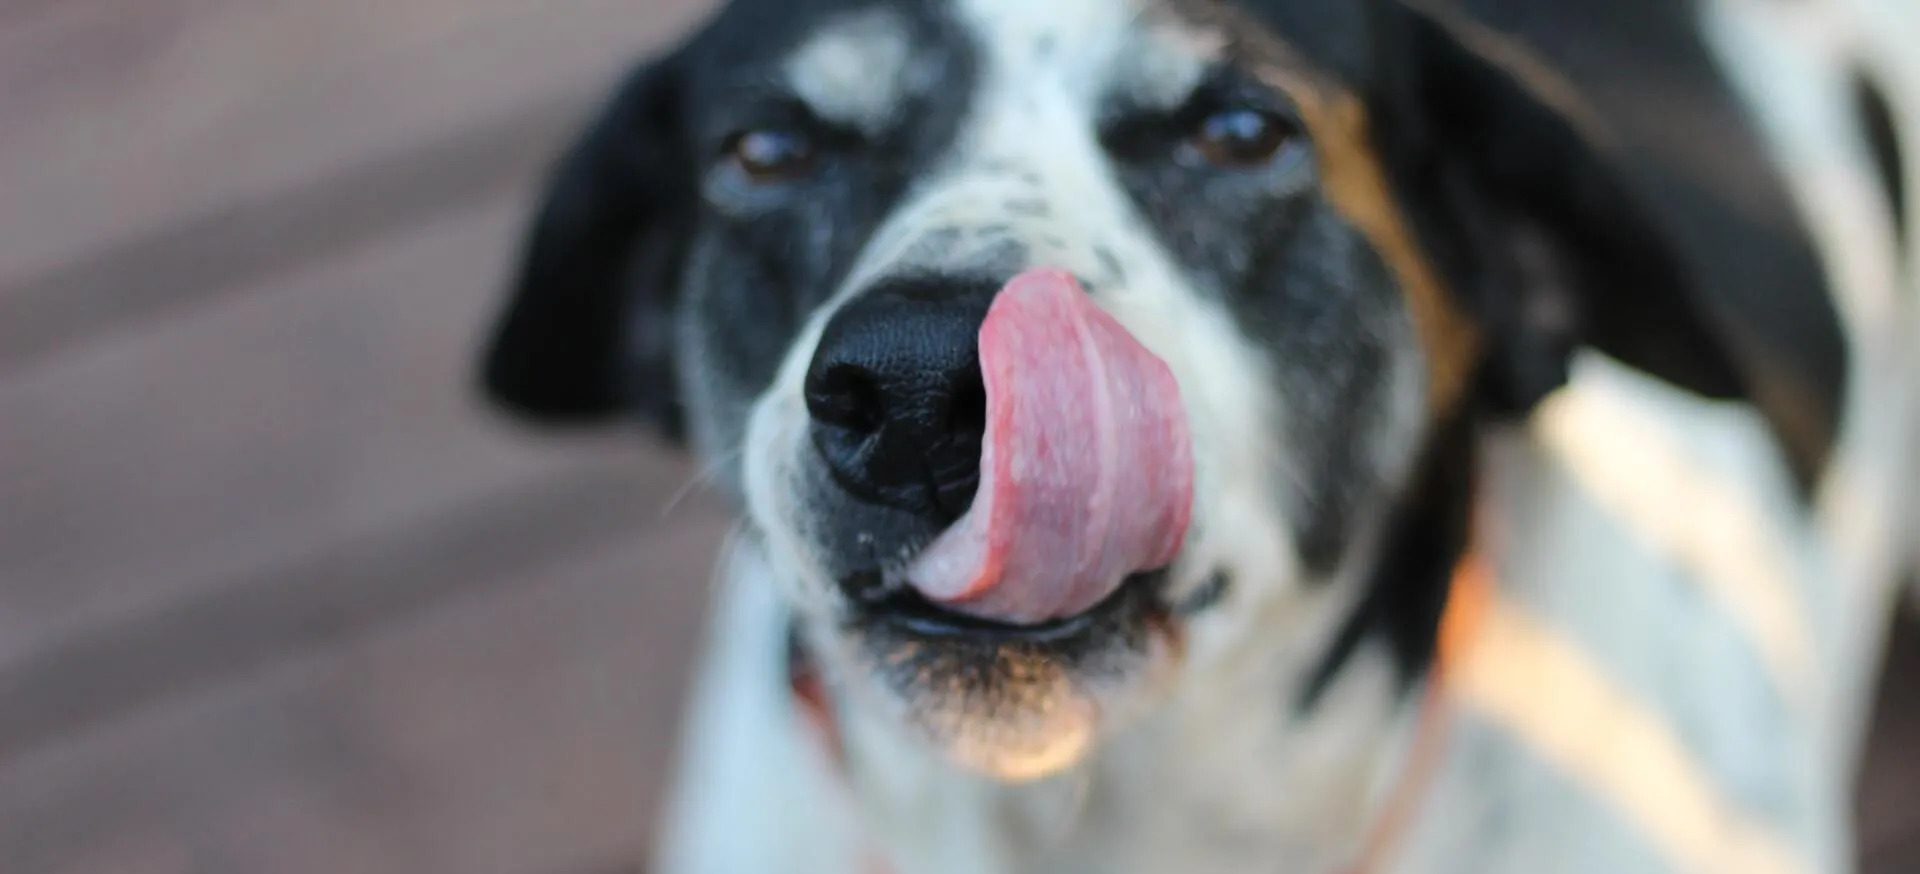 Dog licking its nose